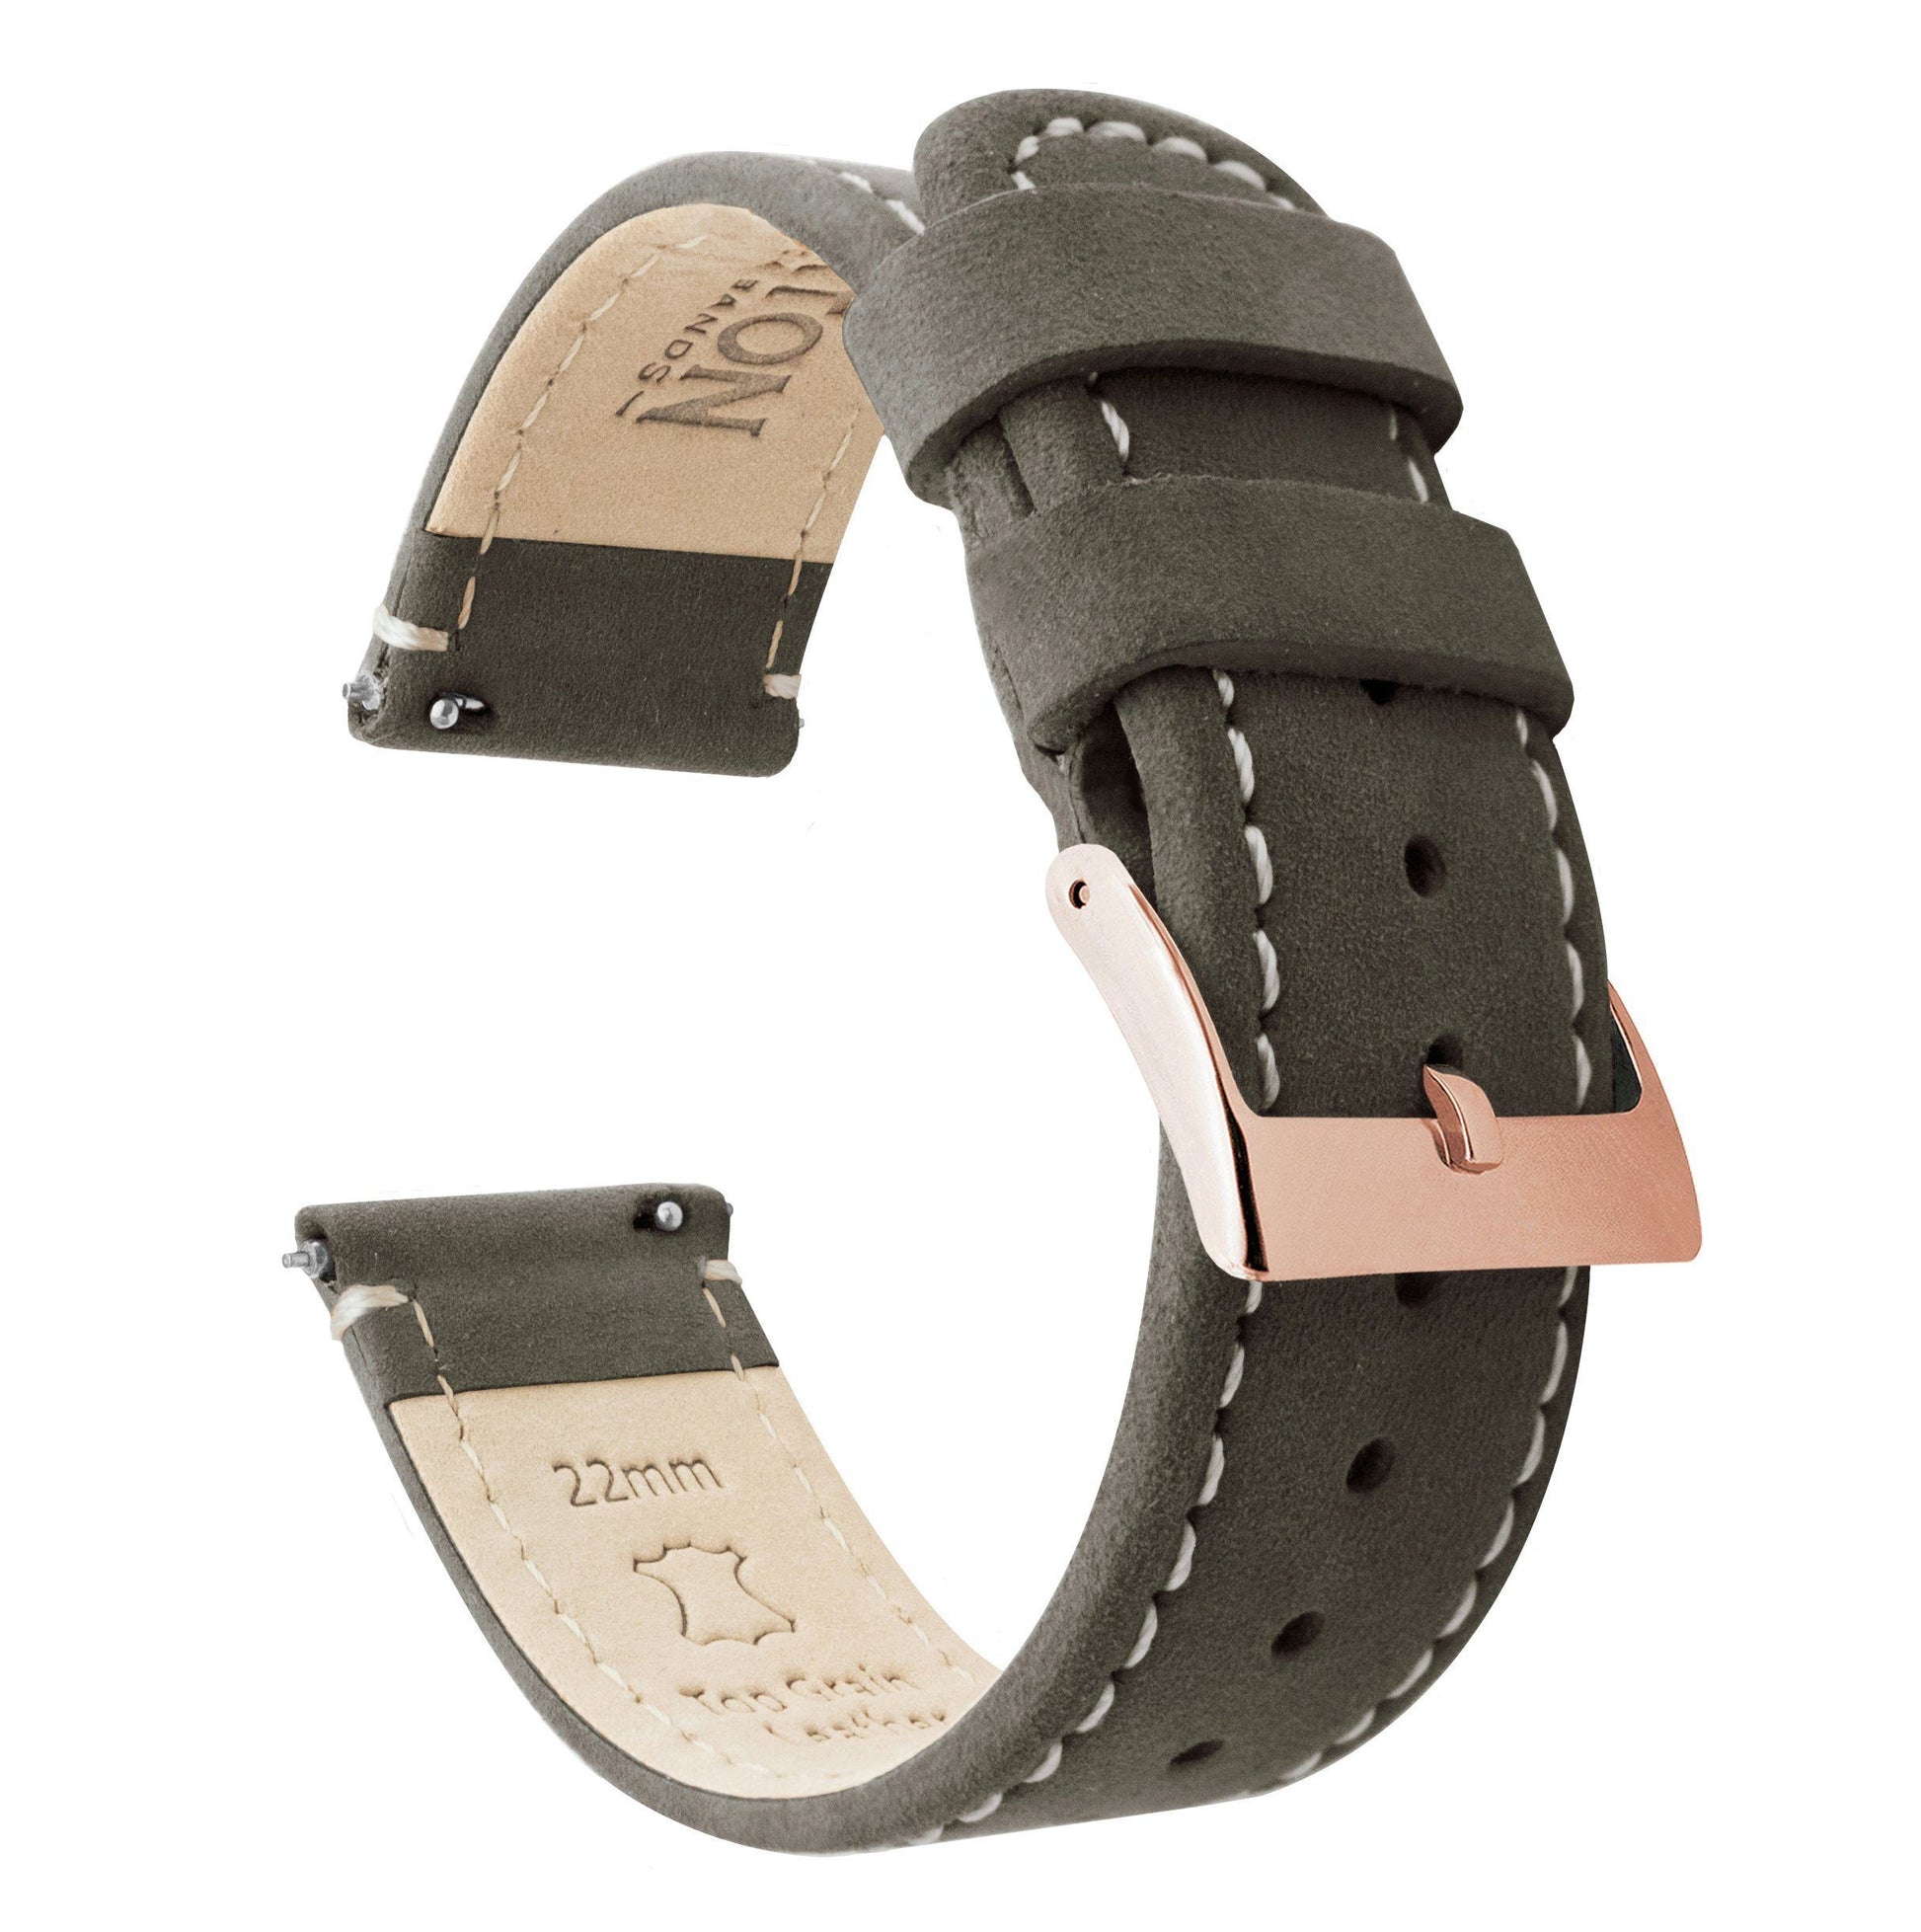 Samsung Galaxy Watch | Espresso Brown Leather & Linen White Stitching - Barton Watch Bands